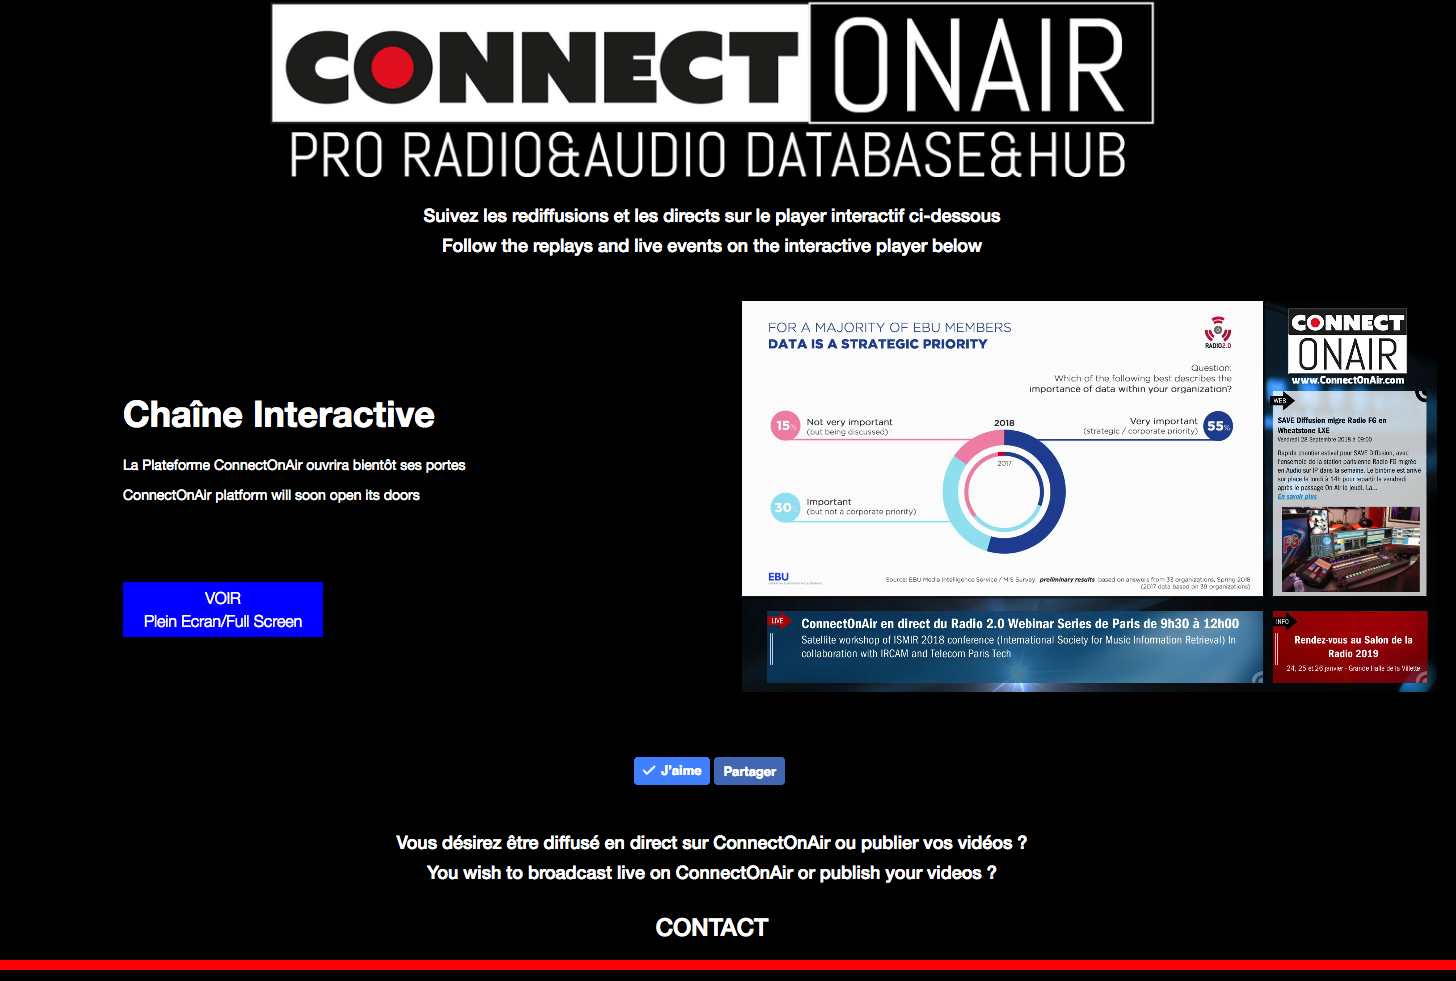 La plateforme ConnectOnAir avec son player interactif. Les prémices de la plateforme